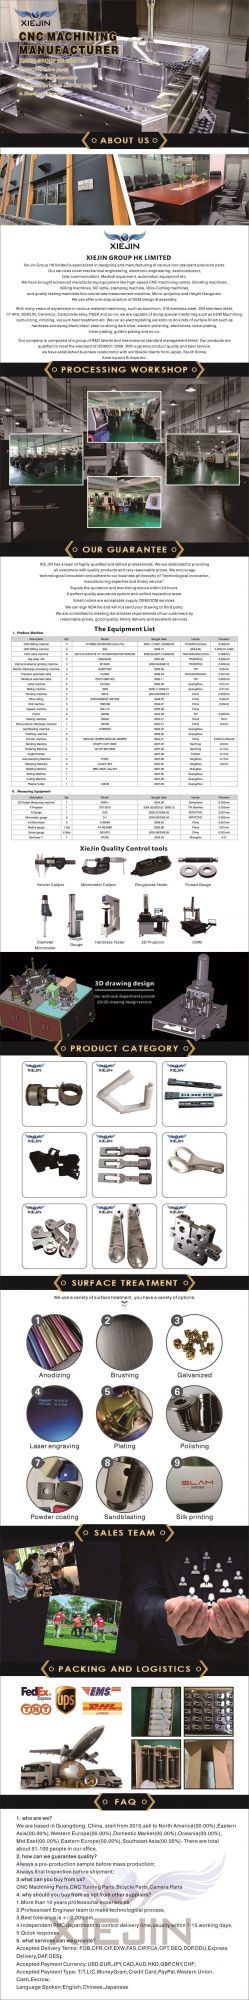 Customized Parts Aluminum CNC Turning Precision Milling Parts CNC Turning Parts/CNC Aluminum Parts